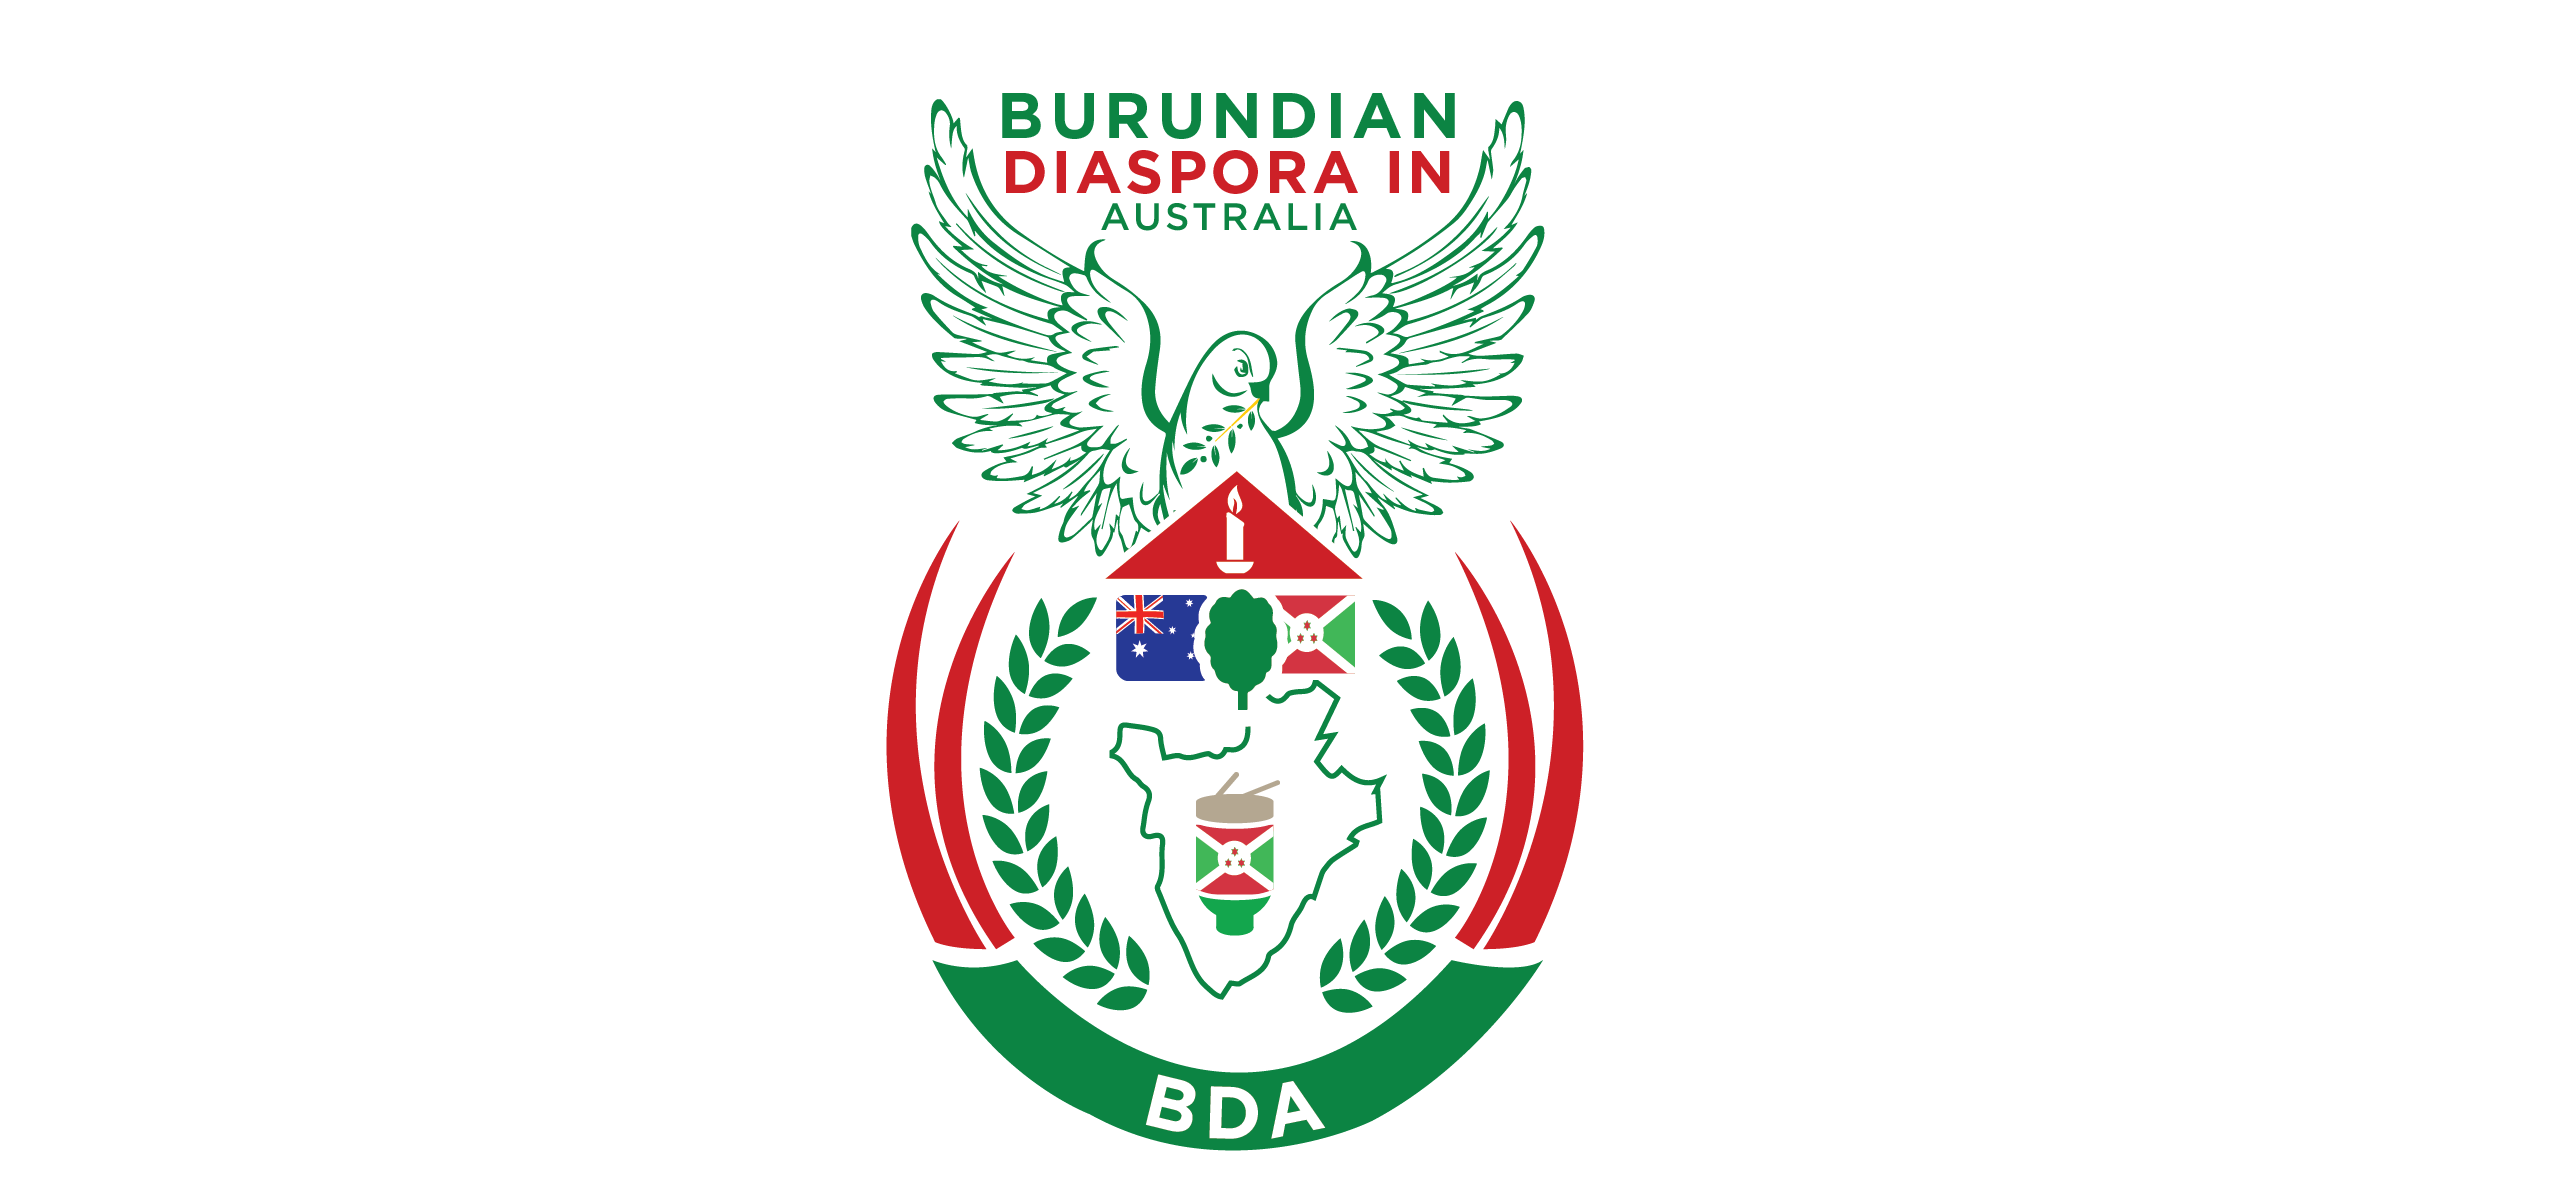 Burundian Diaspora in Australia logo